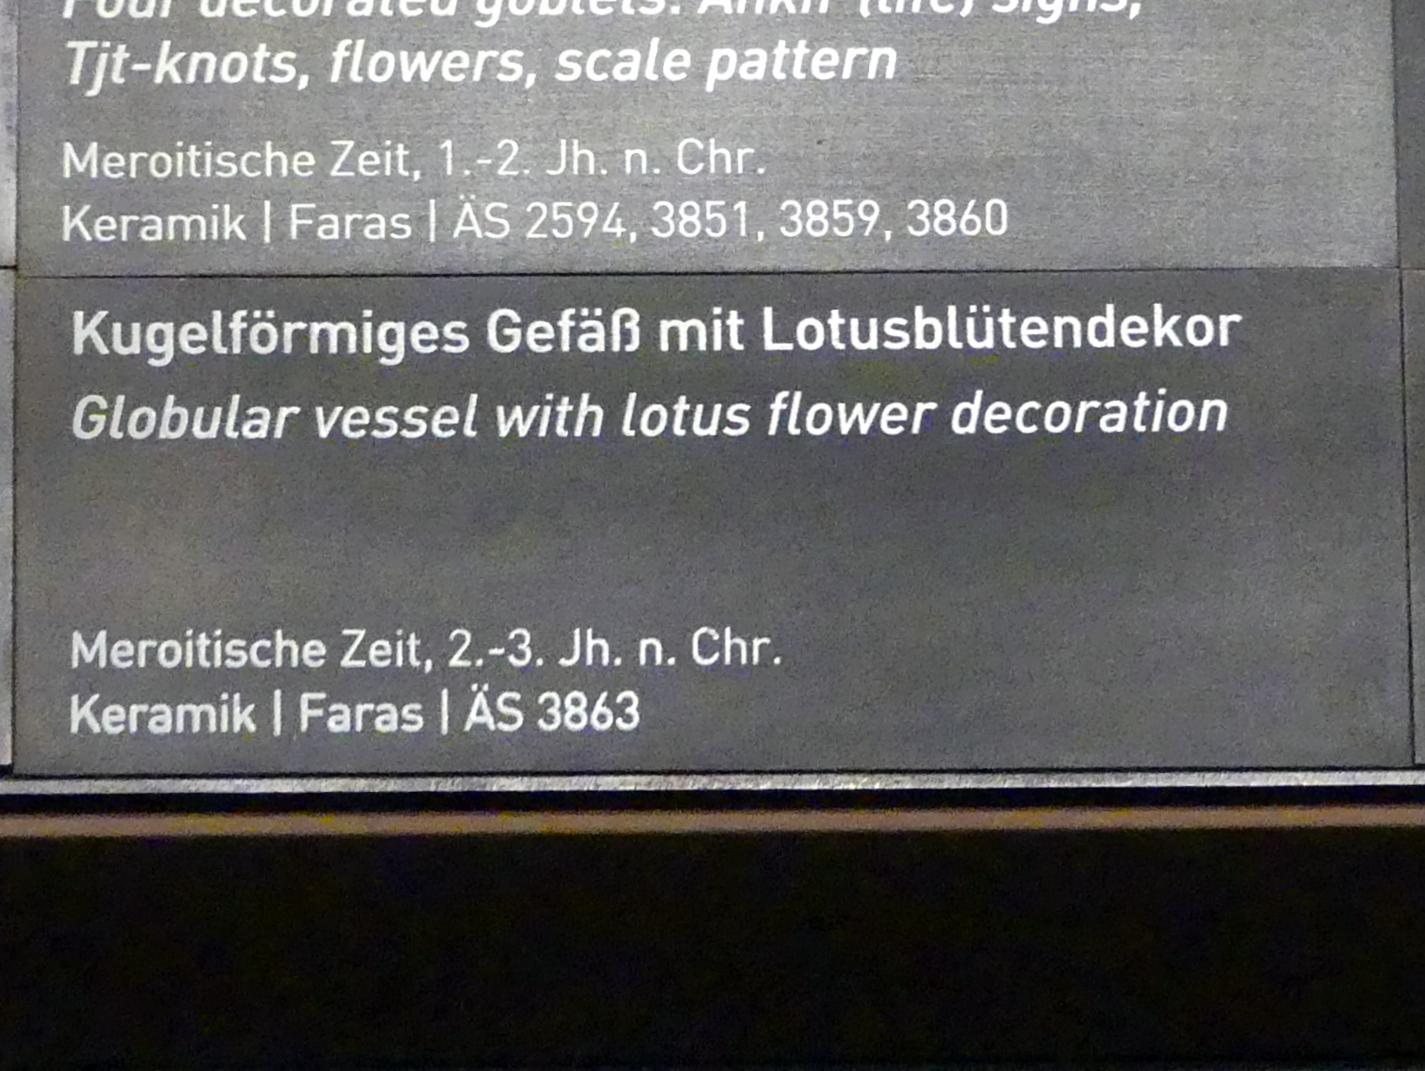 Kugelförmiges Gefäß mit Lotusblütendekor, Meroitische Zeit, 200 v. Chr. - 500 n. Chr., 100 - 300, Bild 2/2